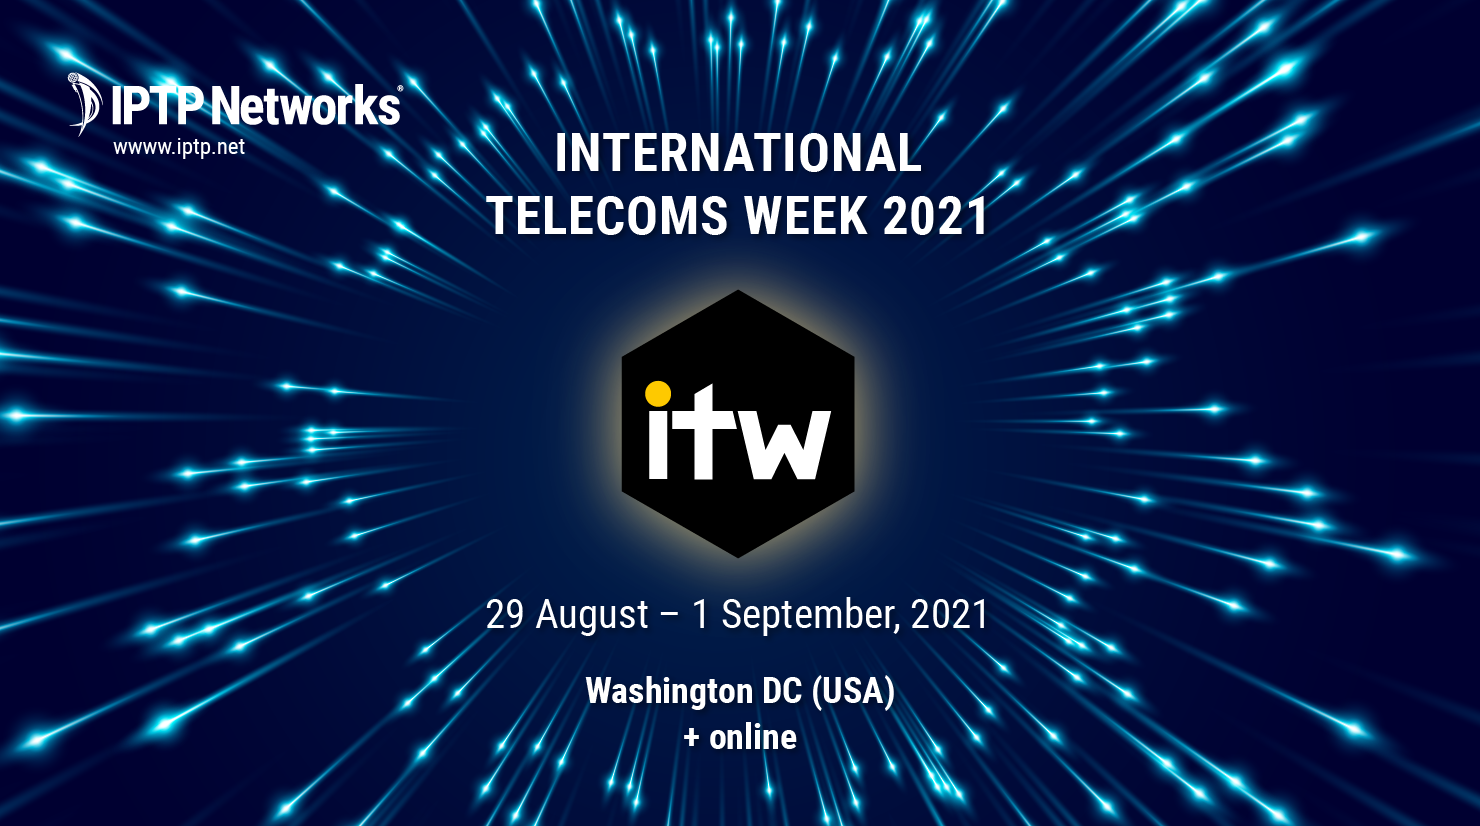 International Telecoms Week 2021